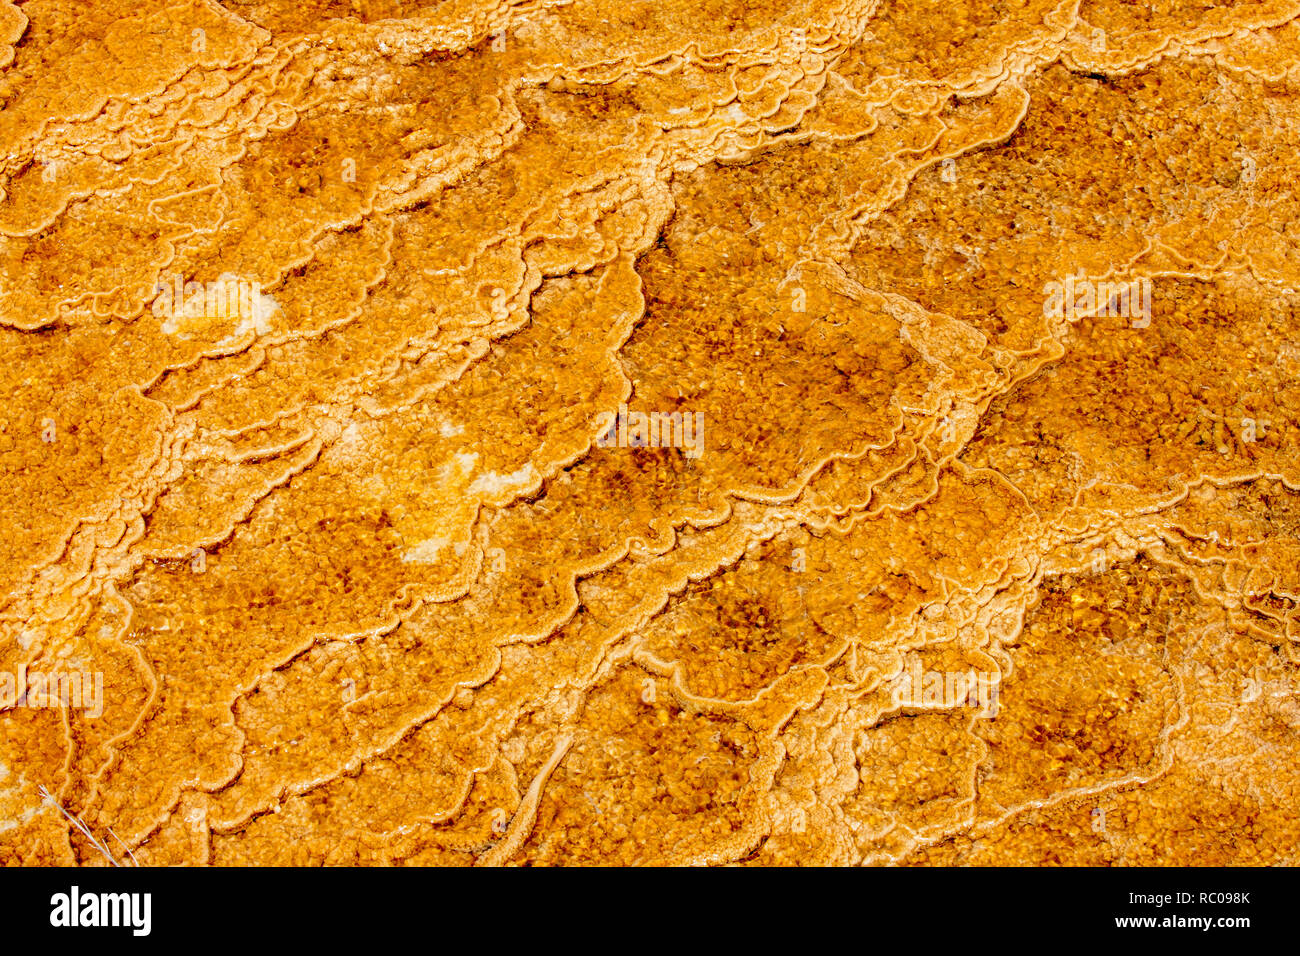 Amarillo termófilas son microorganismos amante del calor que crean tapices de colores donde el agua caliente fluye entre las terrazas en Mammoth Hot Springs. Foto de stock